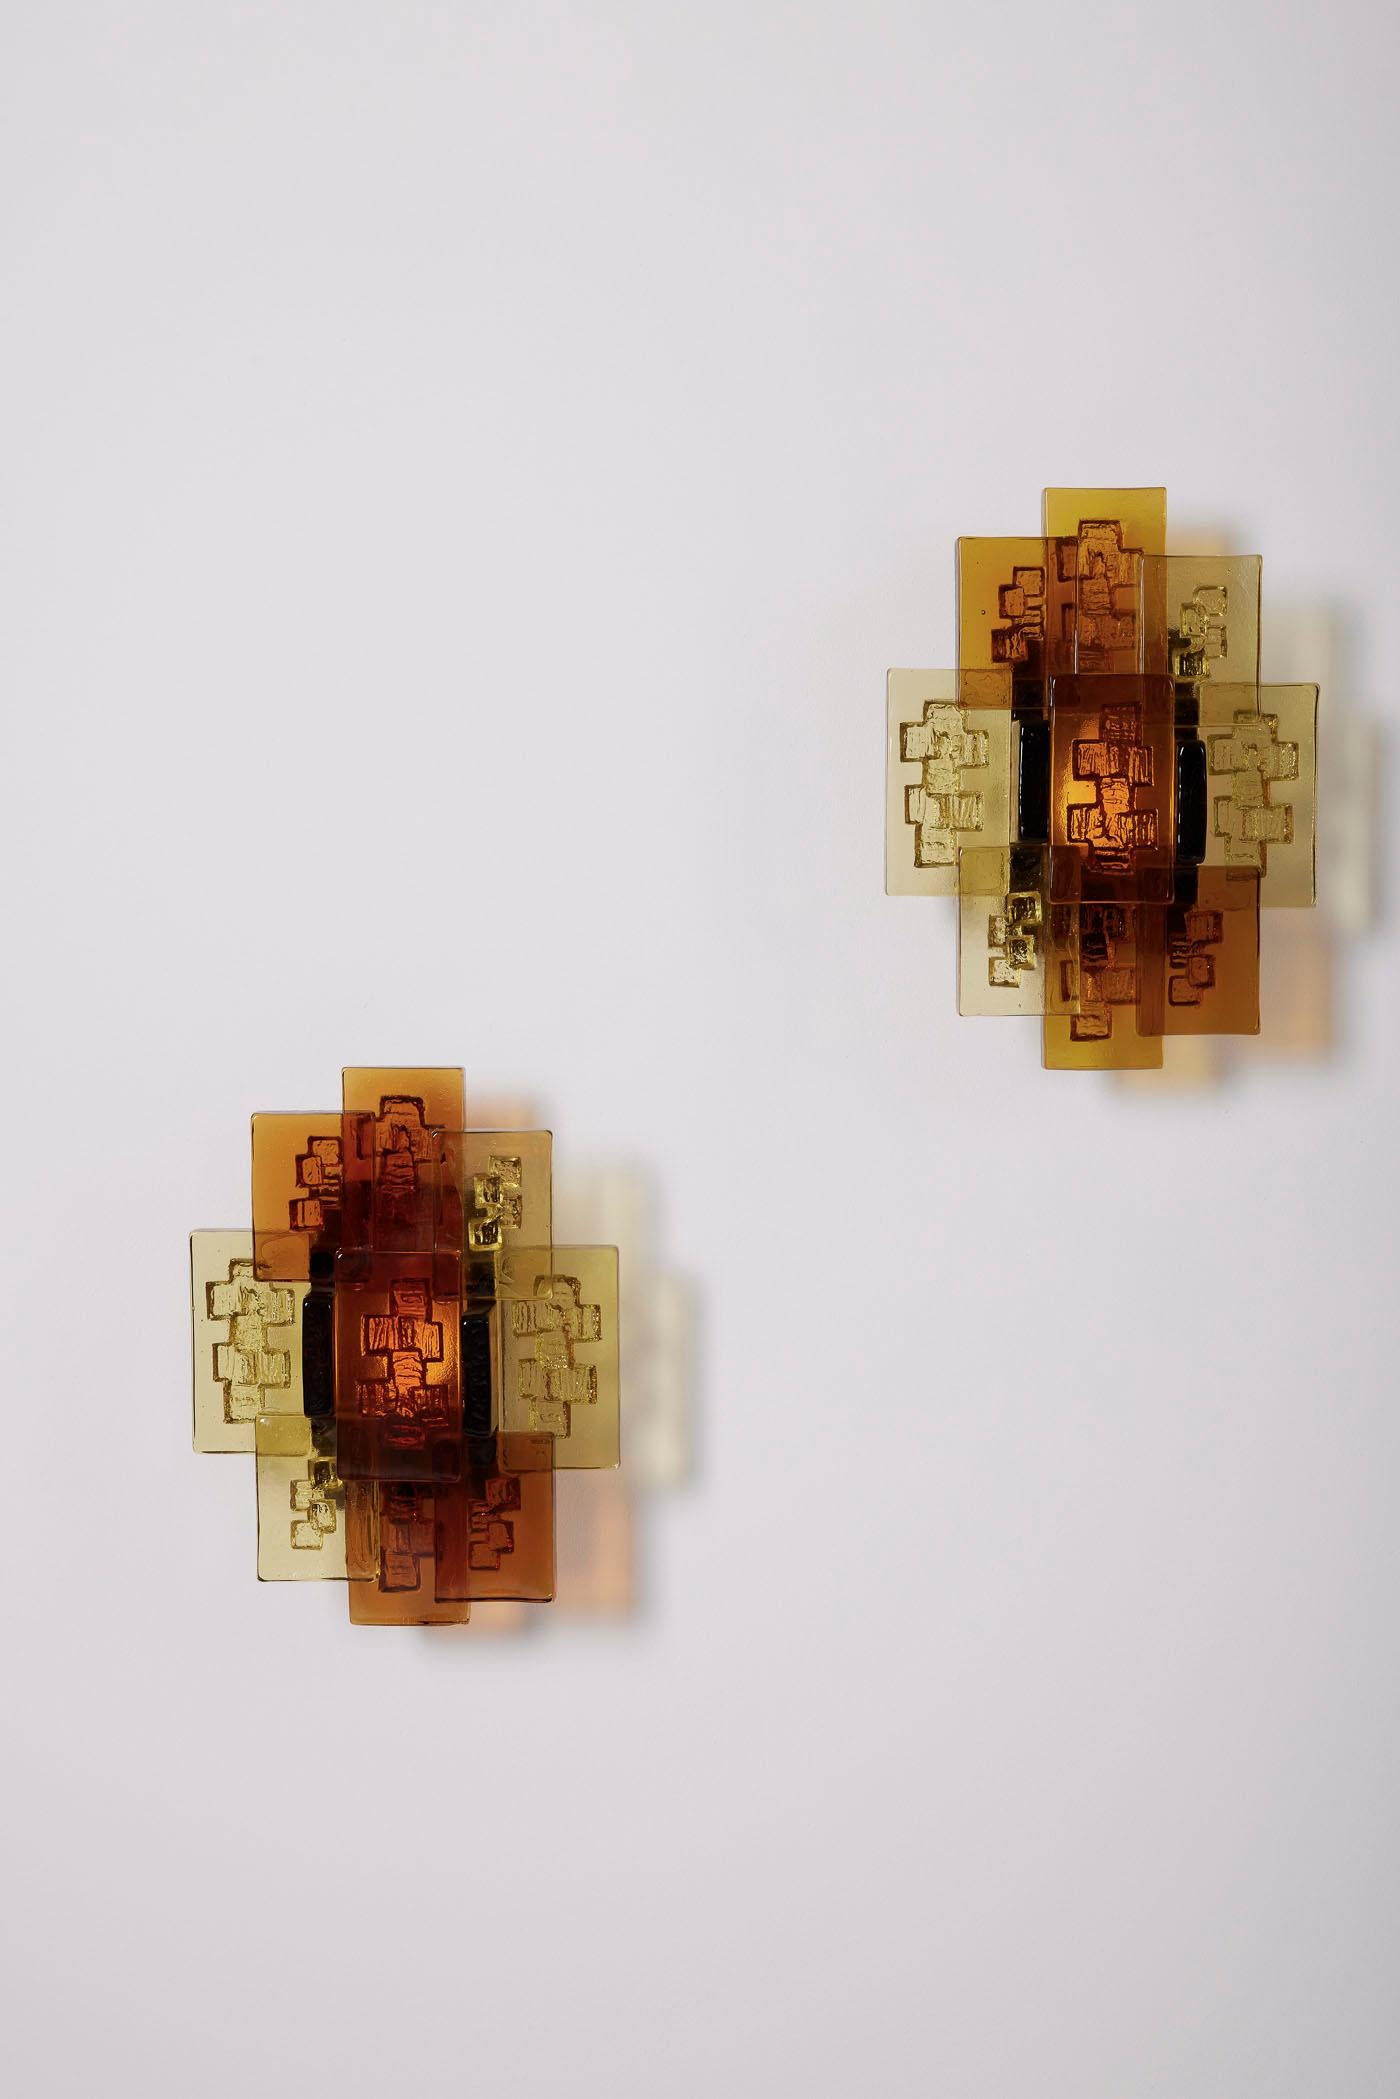 Paire d'appliques en verre du designer danois Svend Aage Holm Sørensen (1913-2004), datant des années 1950. Le diffuseur est composé d'un ensemble de rectangles épais en verre ambré et jaune. En très bon état général.

LP1965